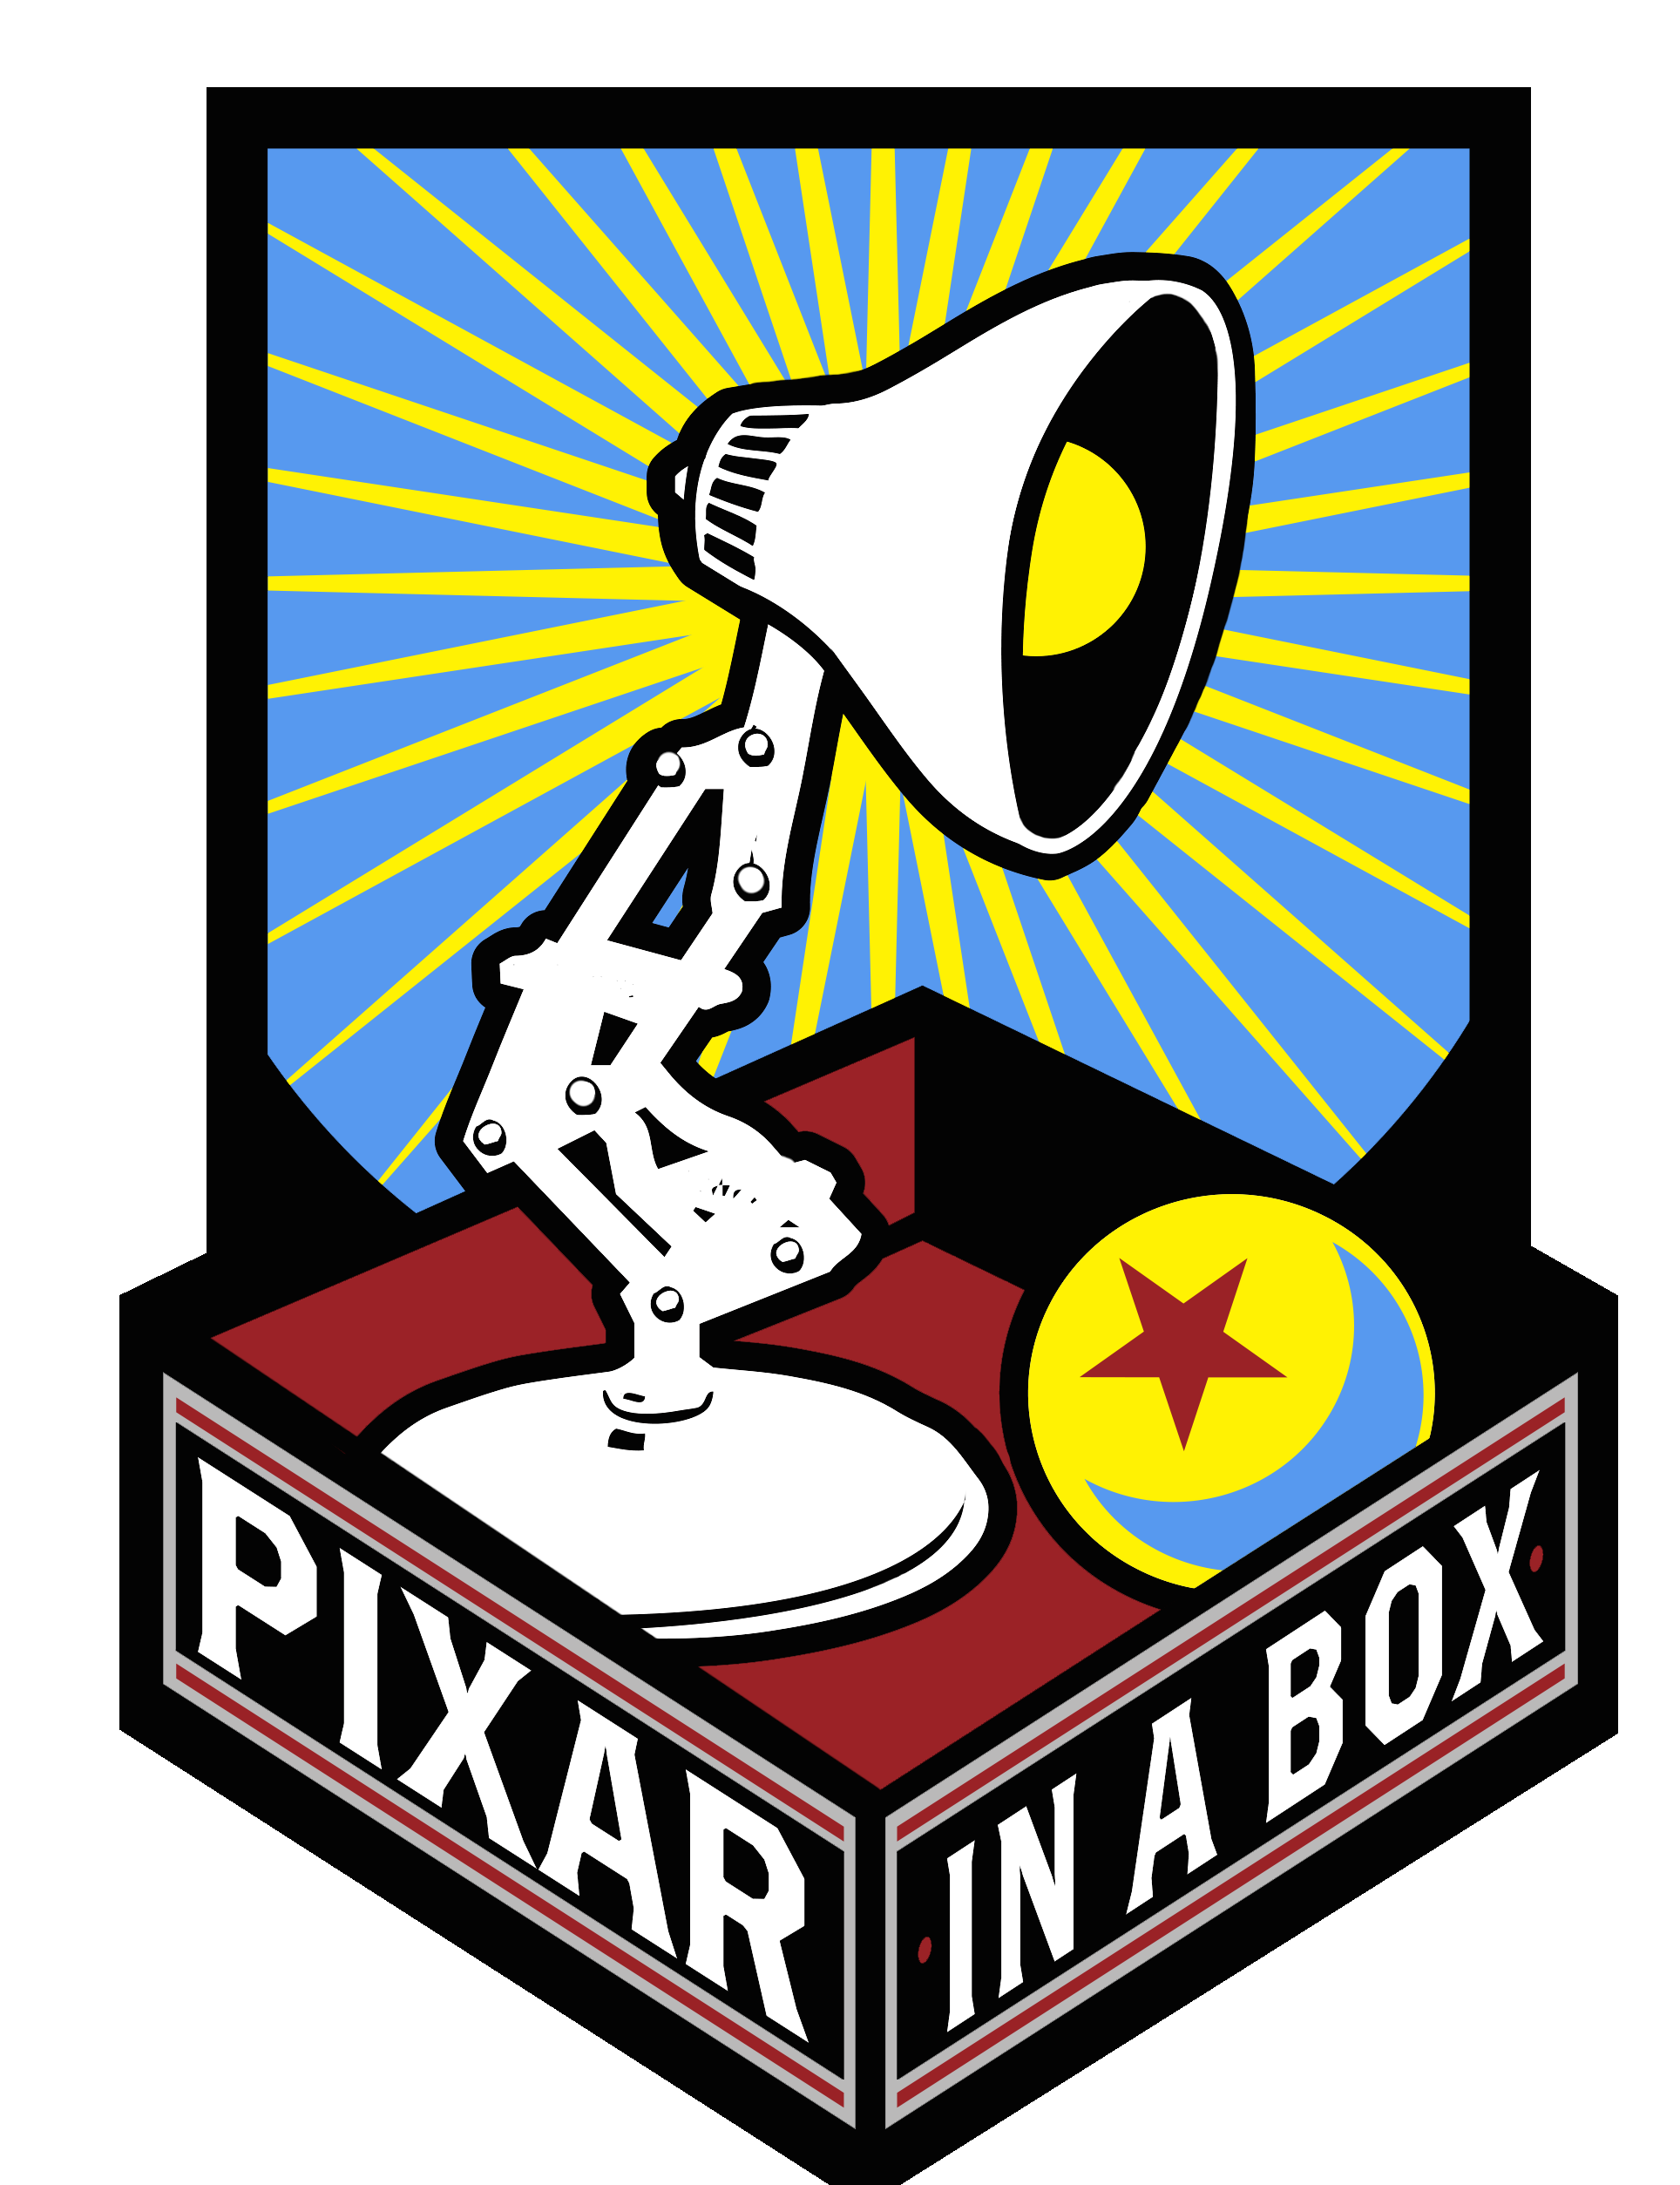 Pixar in a Box